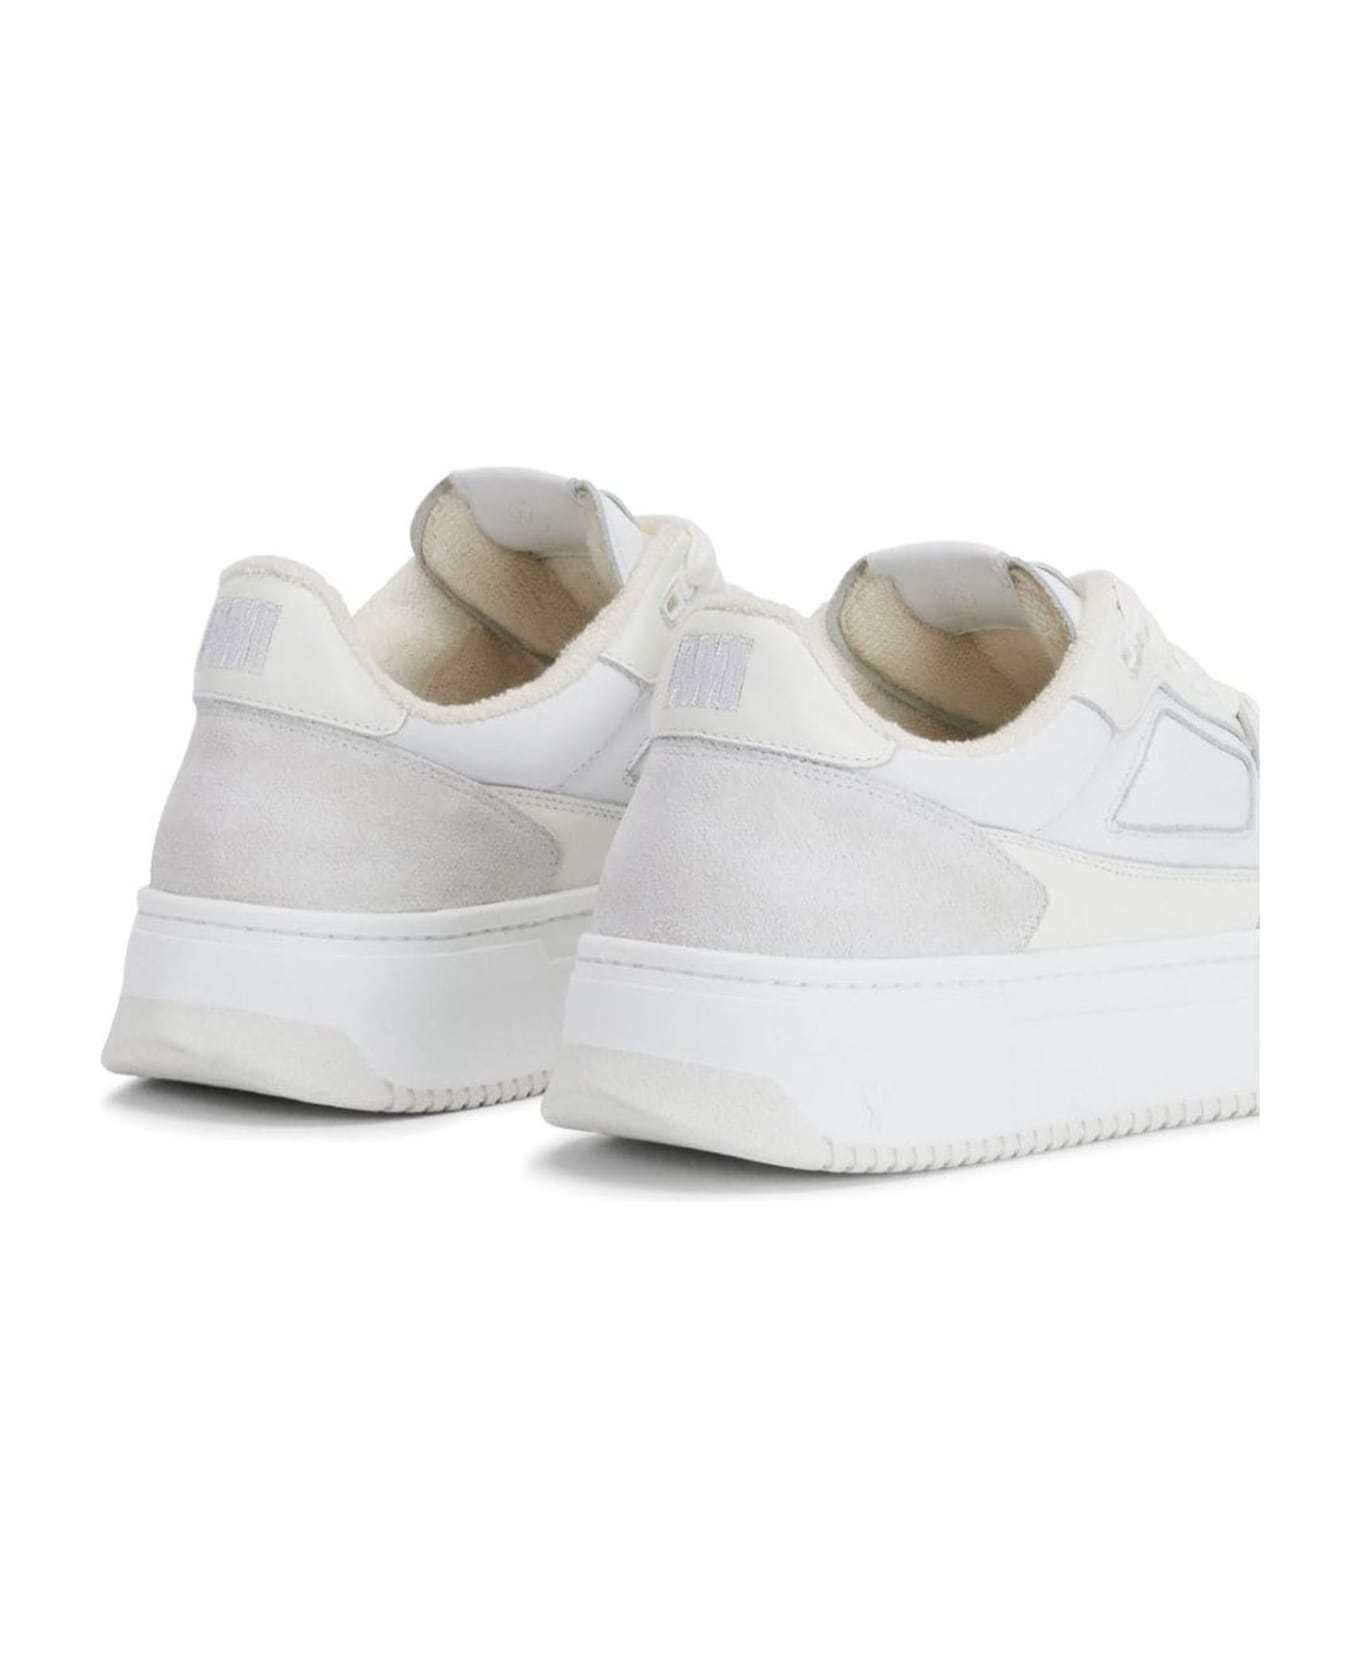 Ami Alexandre Mattiussi White Calf Leather Sneakers - WHITE